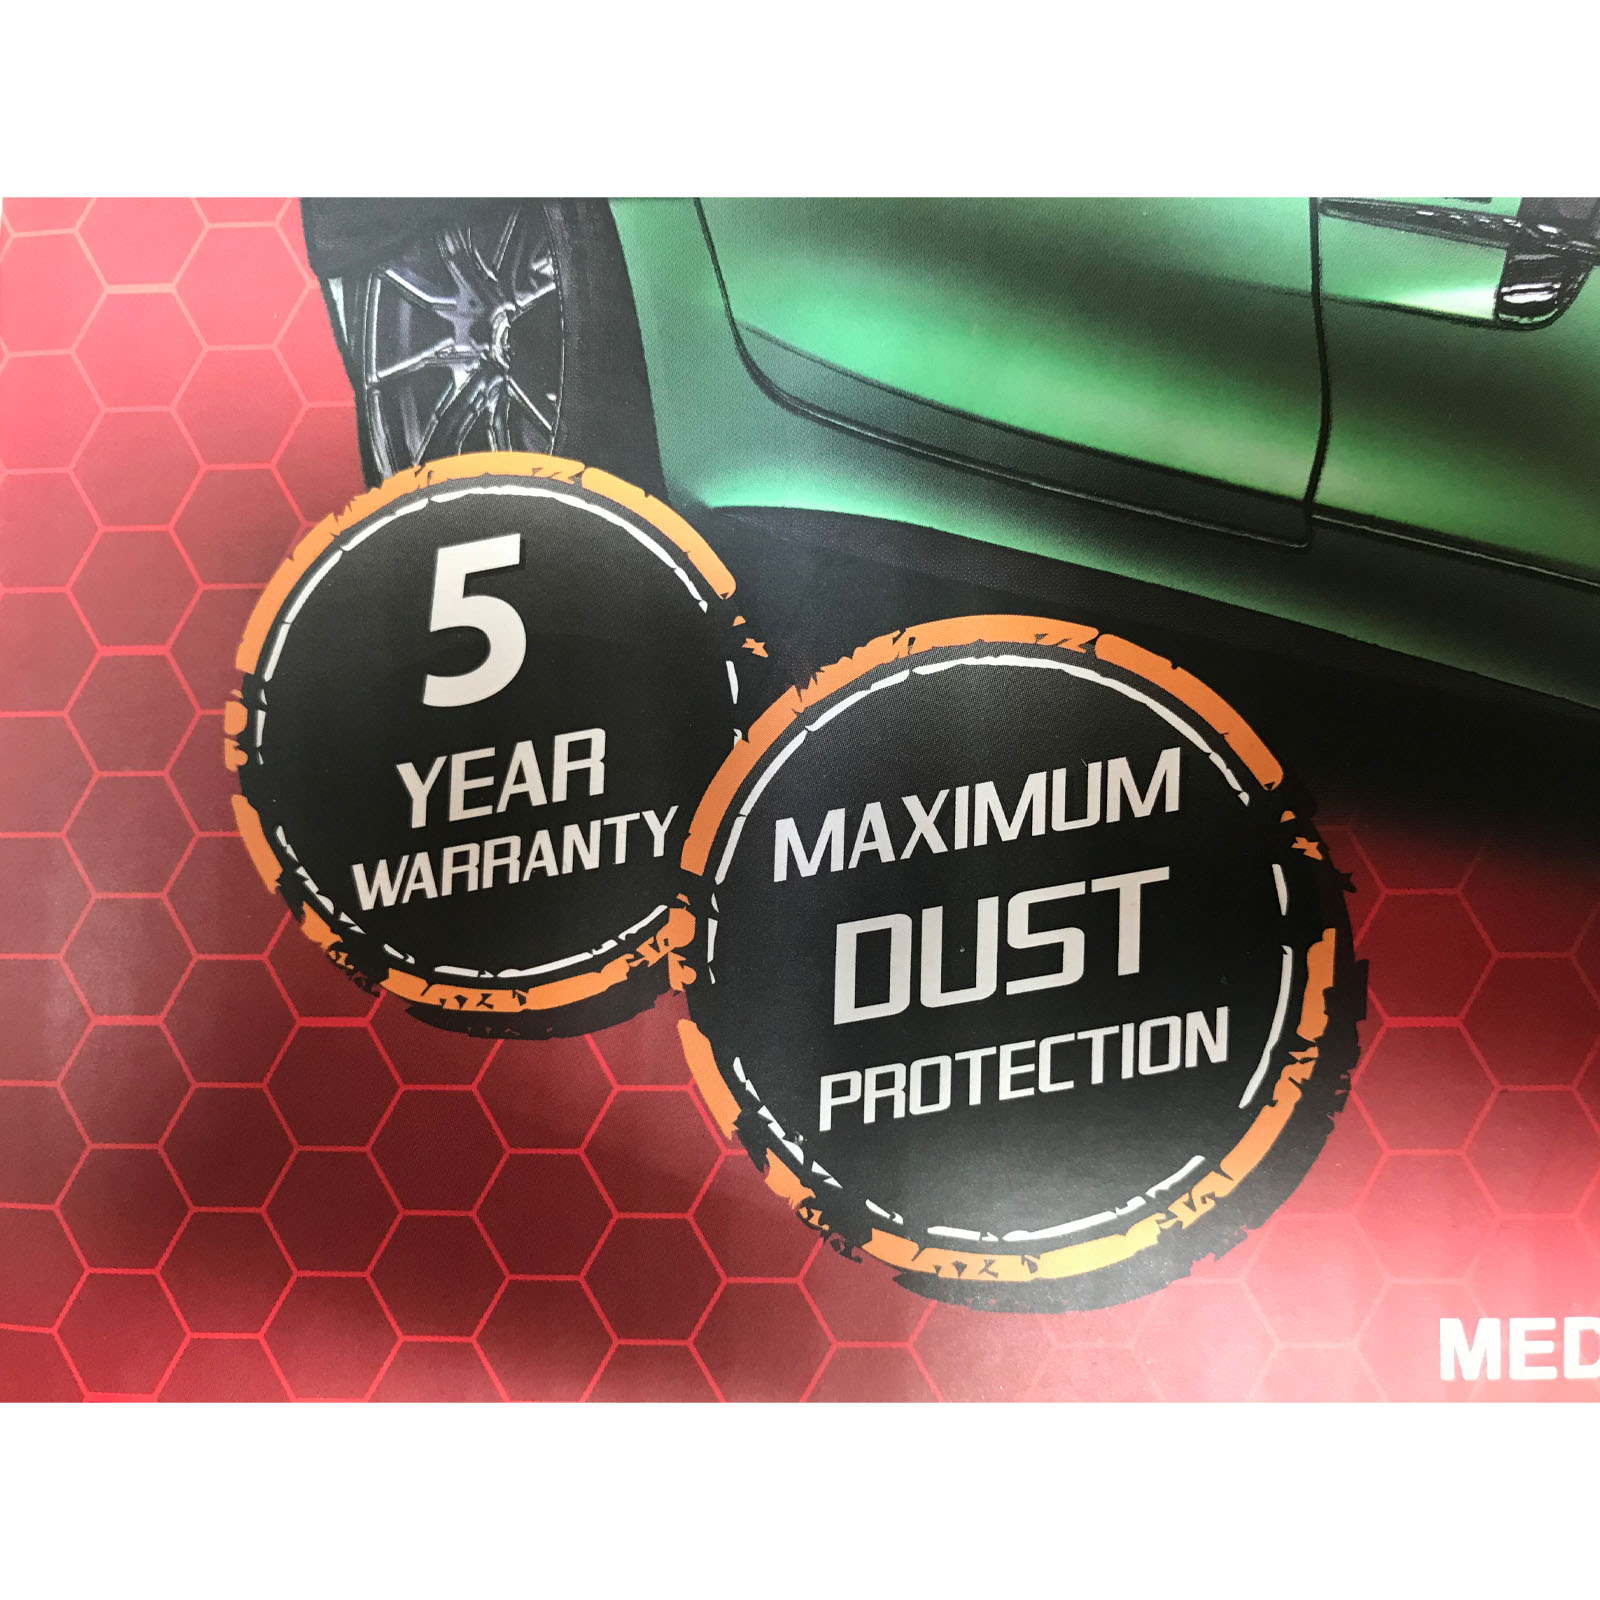 Show Car Cover Indoor Classic fits 4.5m Medium Black Mazda MX5 all models -  Autotecnica